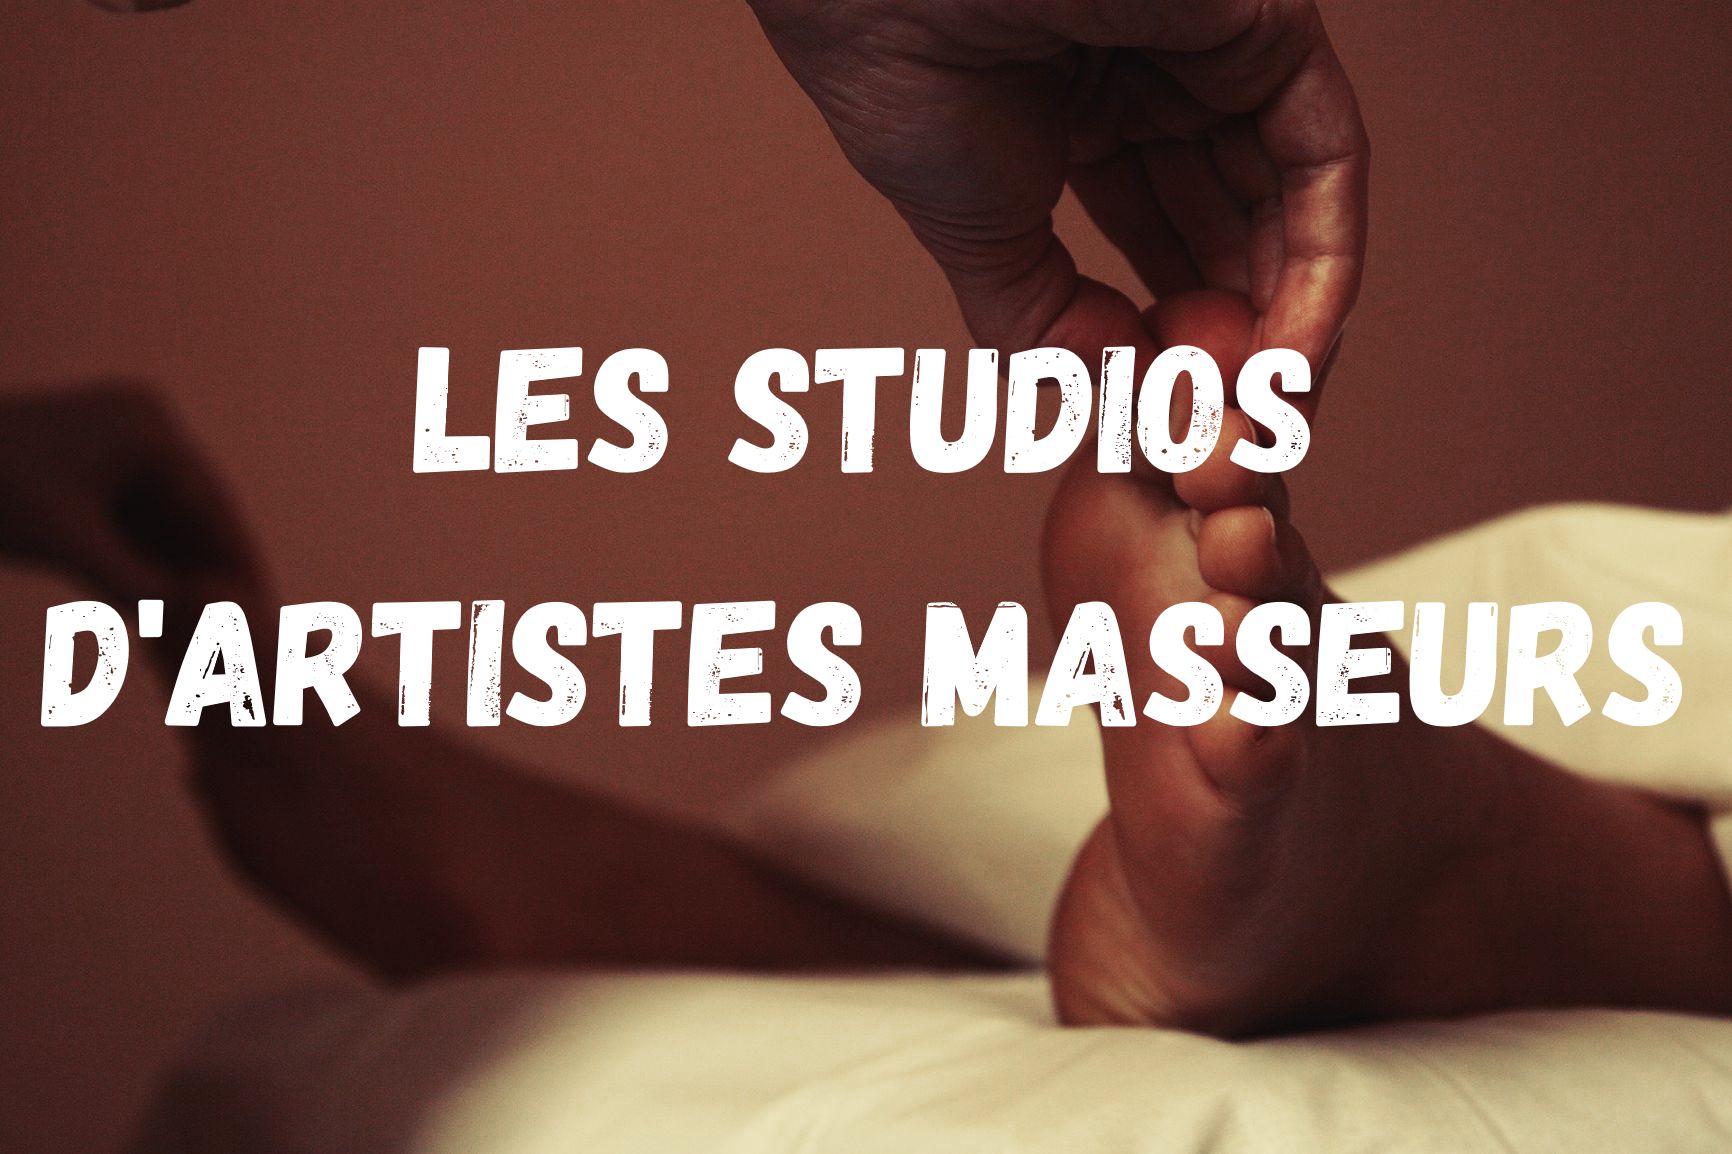 Les studios d'artistes masseurs